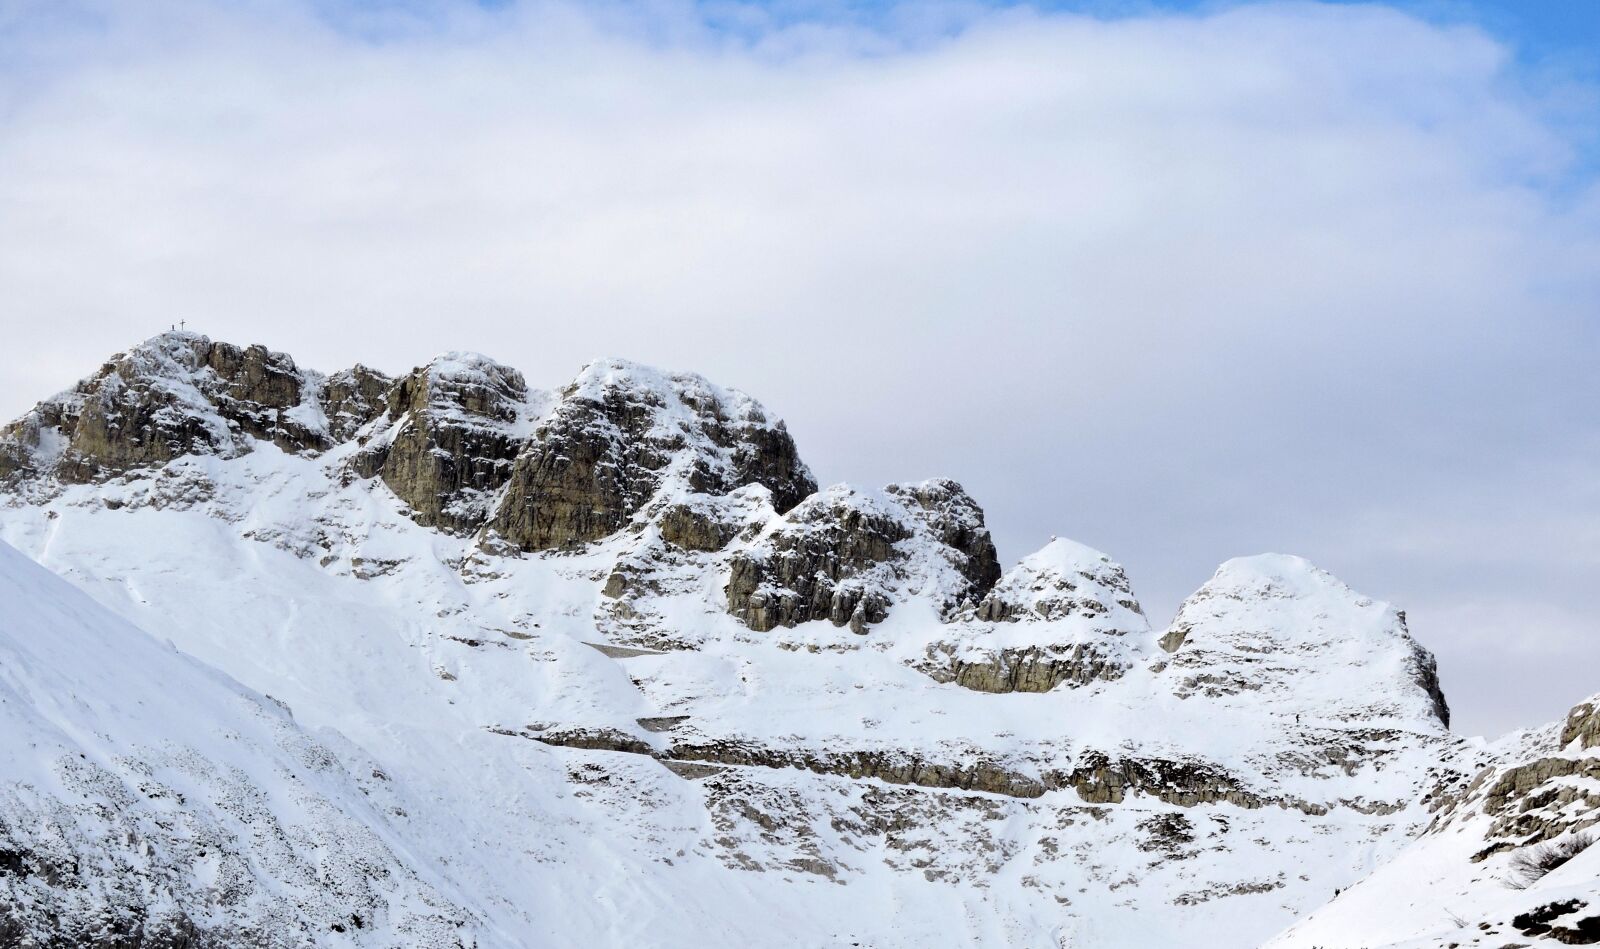 Nikon Coolpix P600 sample photo. Dolomites, mountains, snow photography